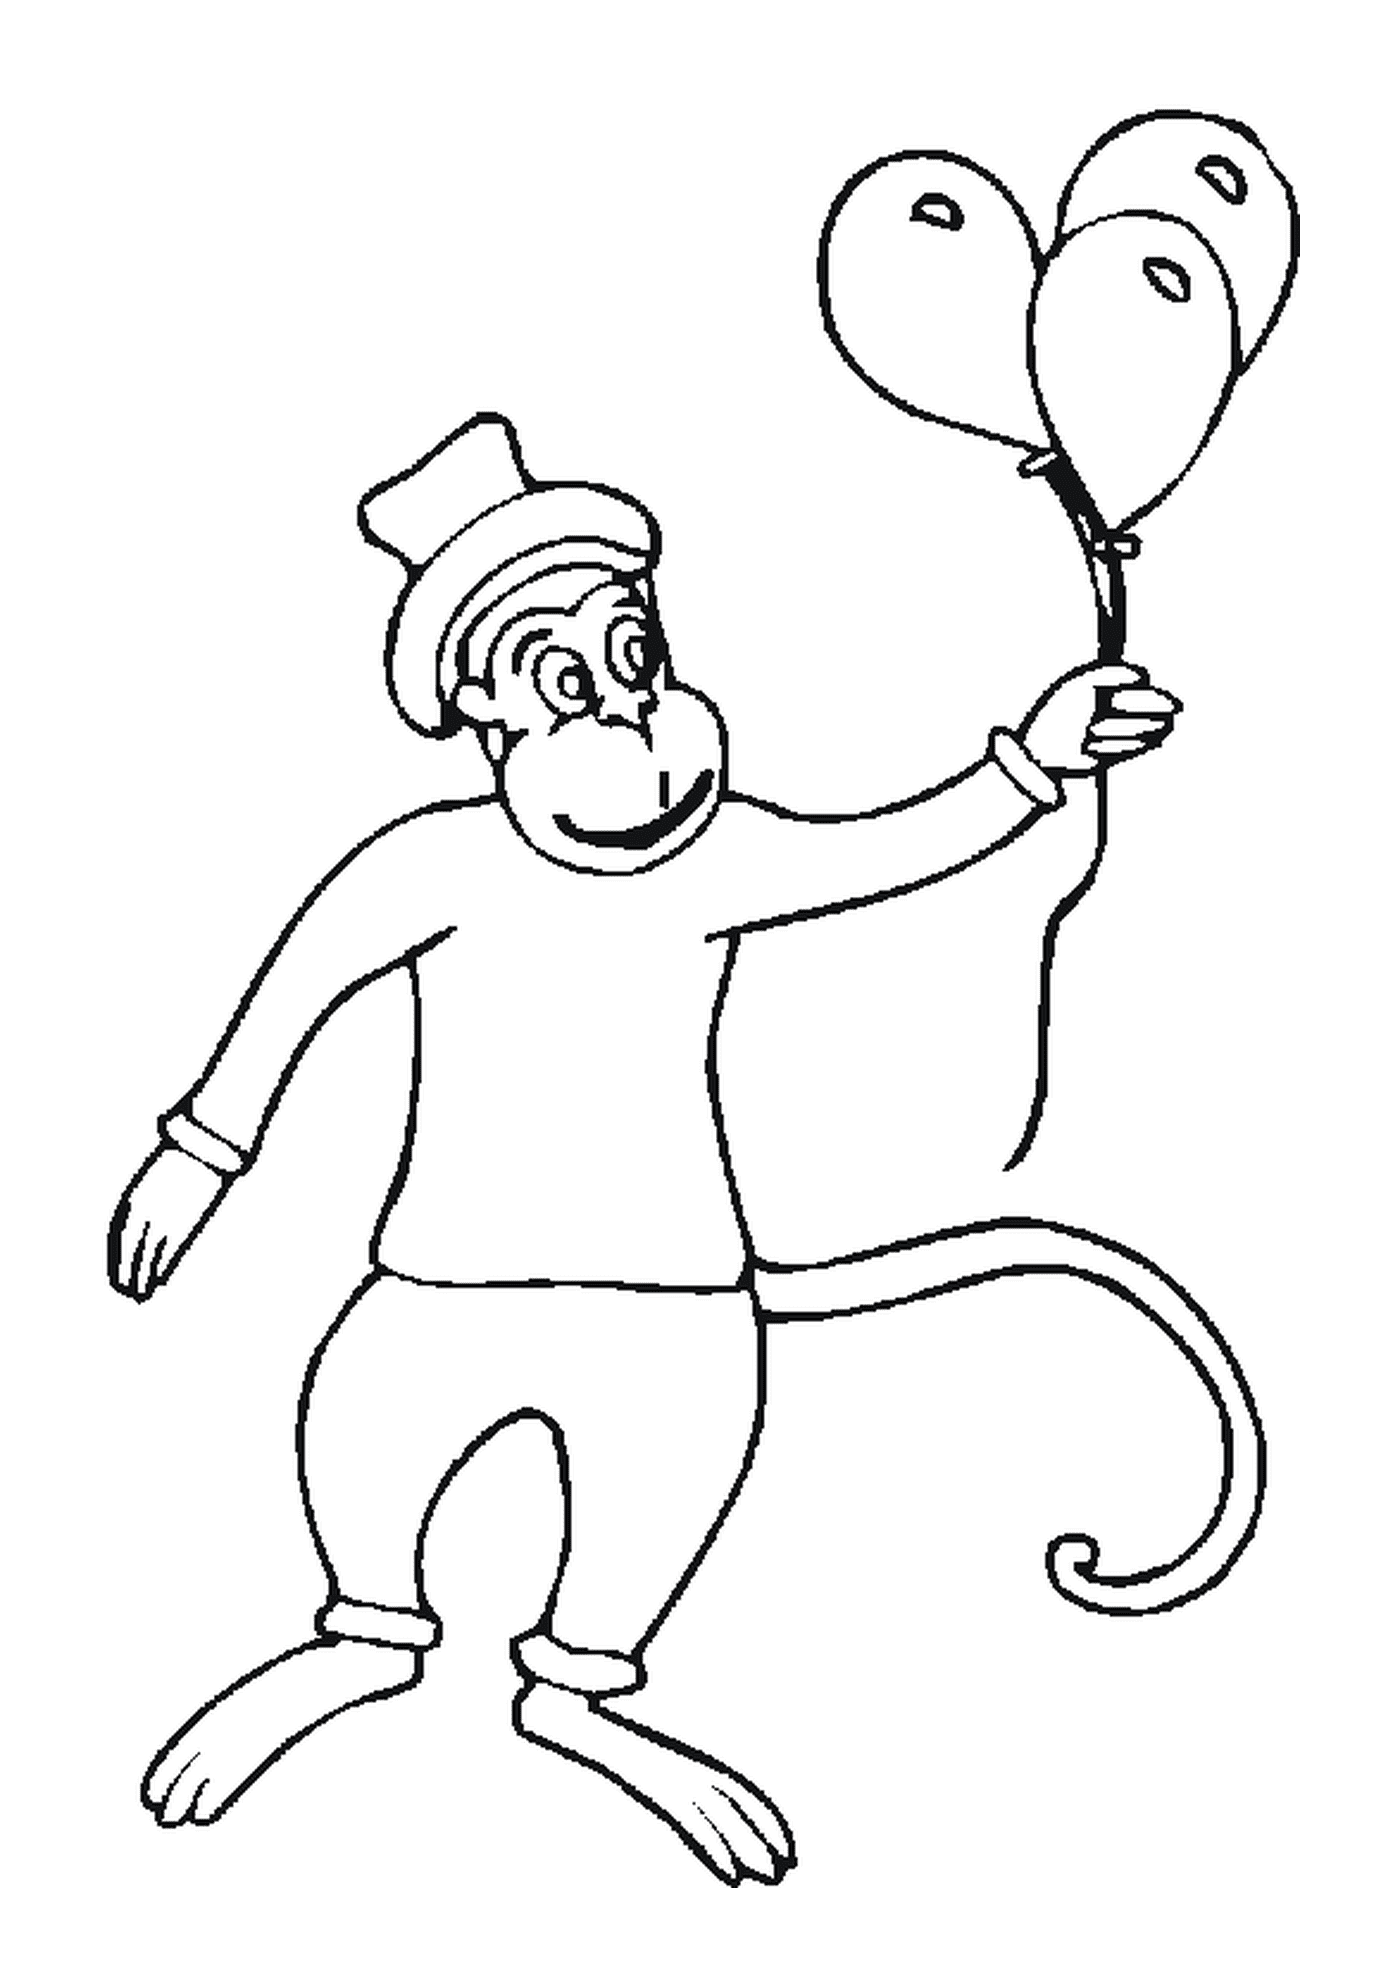  带气球和帽子的猴子 